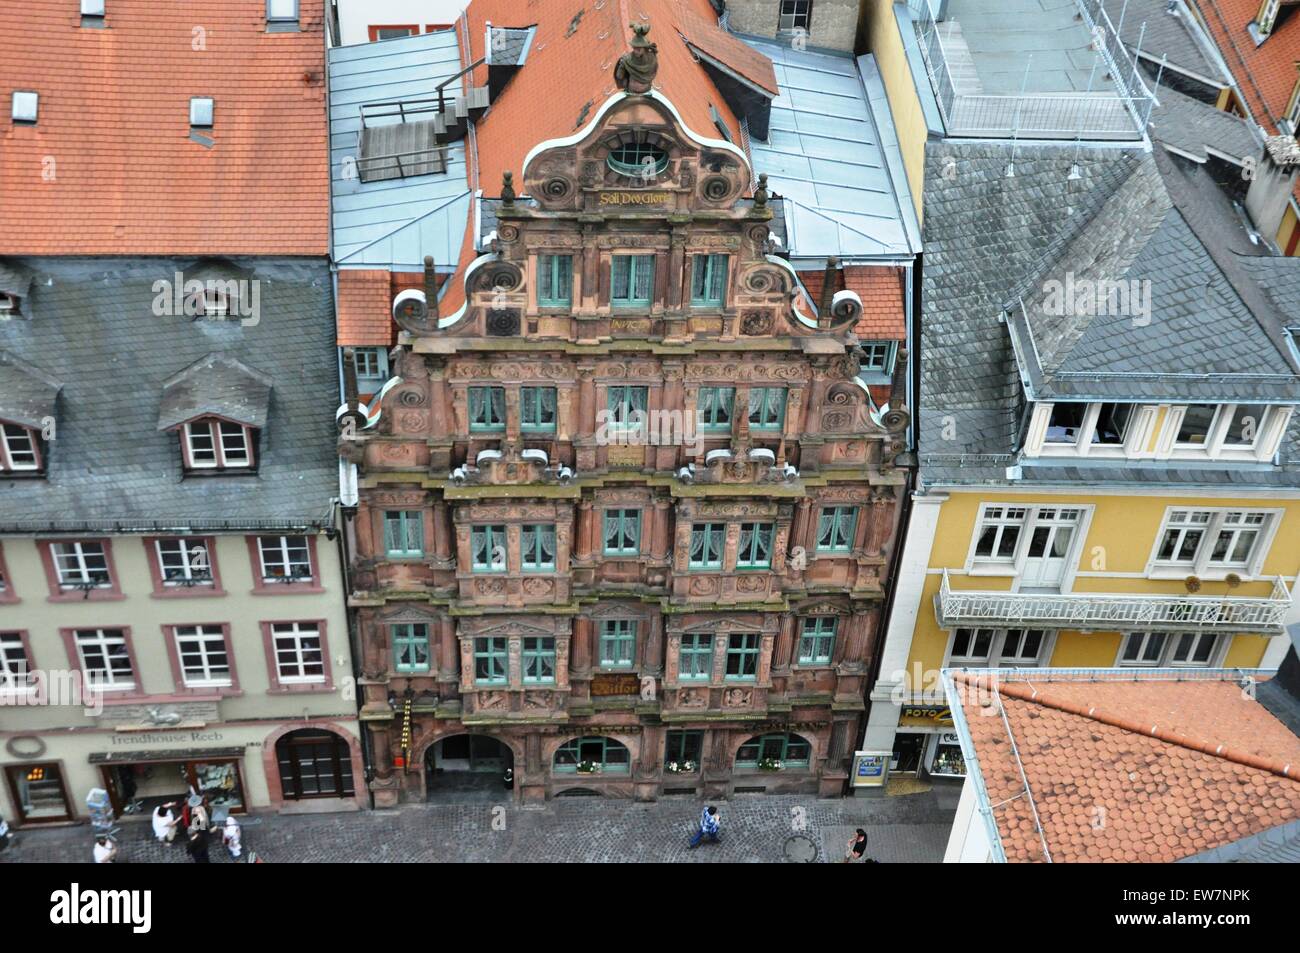 Haus zum Ritter, Heidelberg, Germania Foto Stock